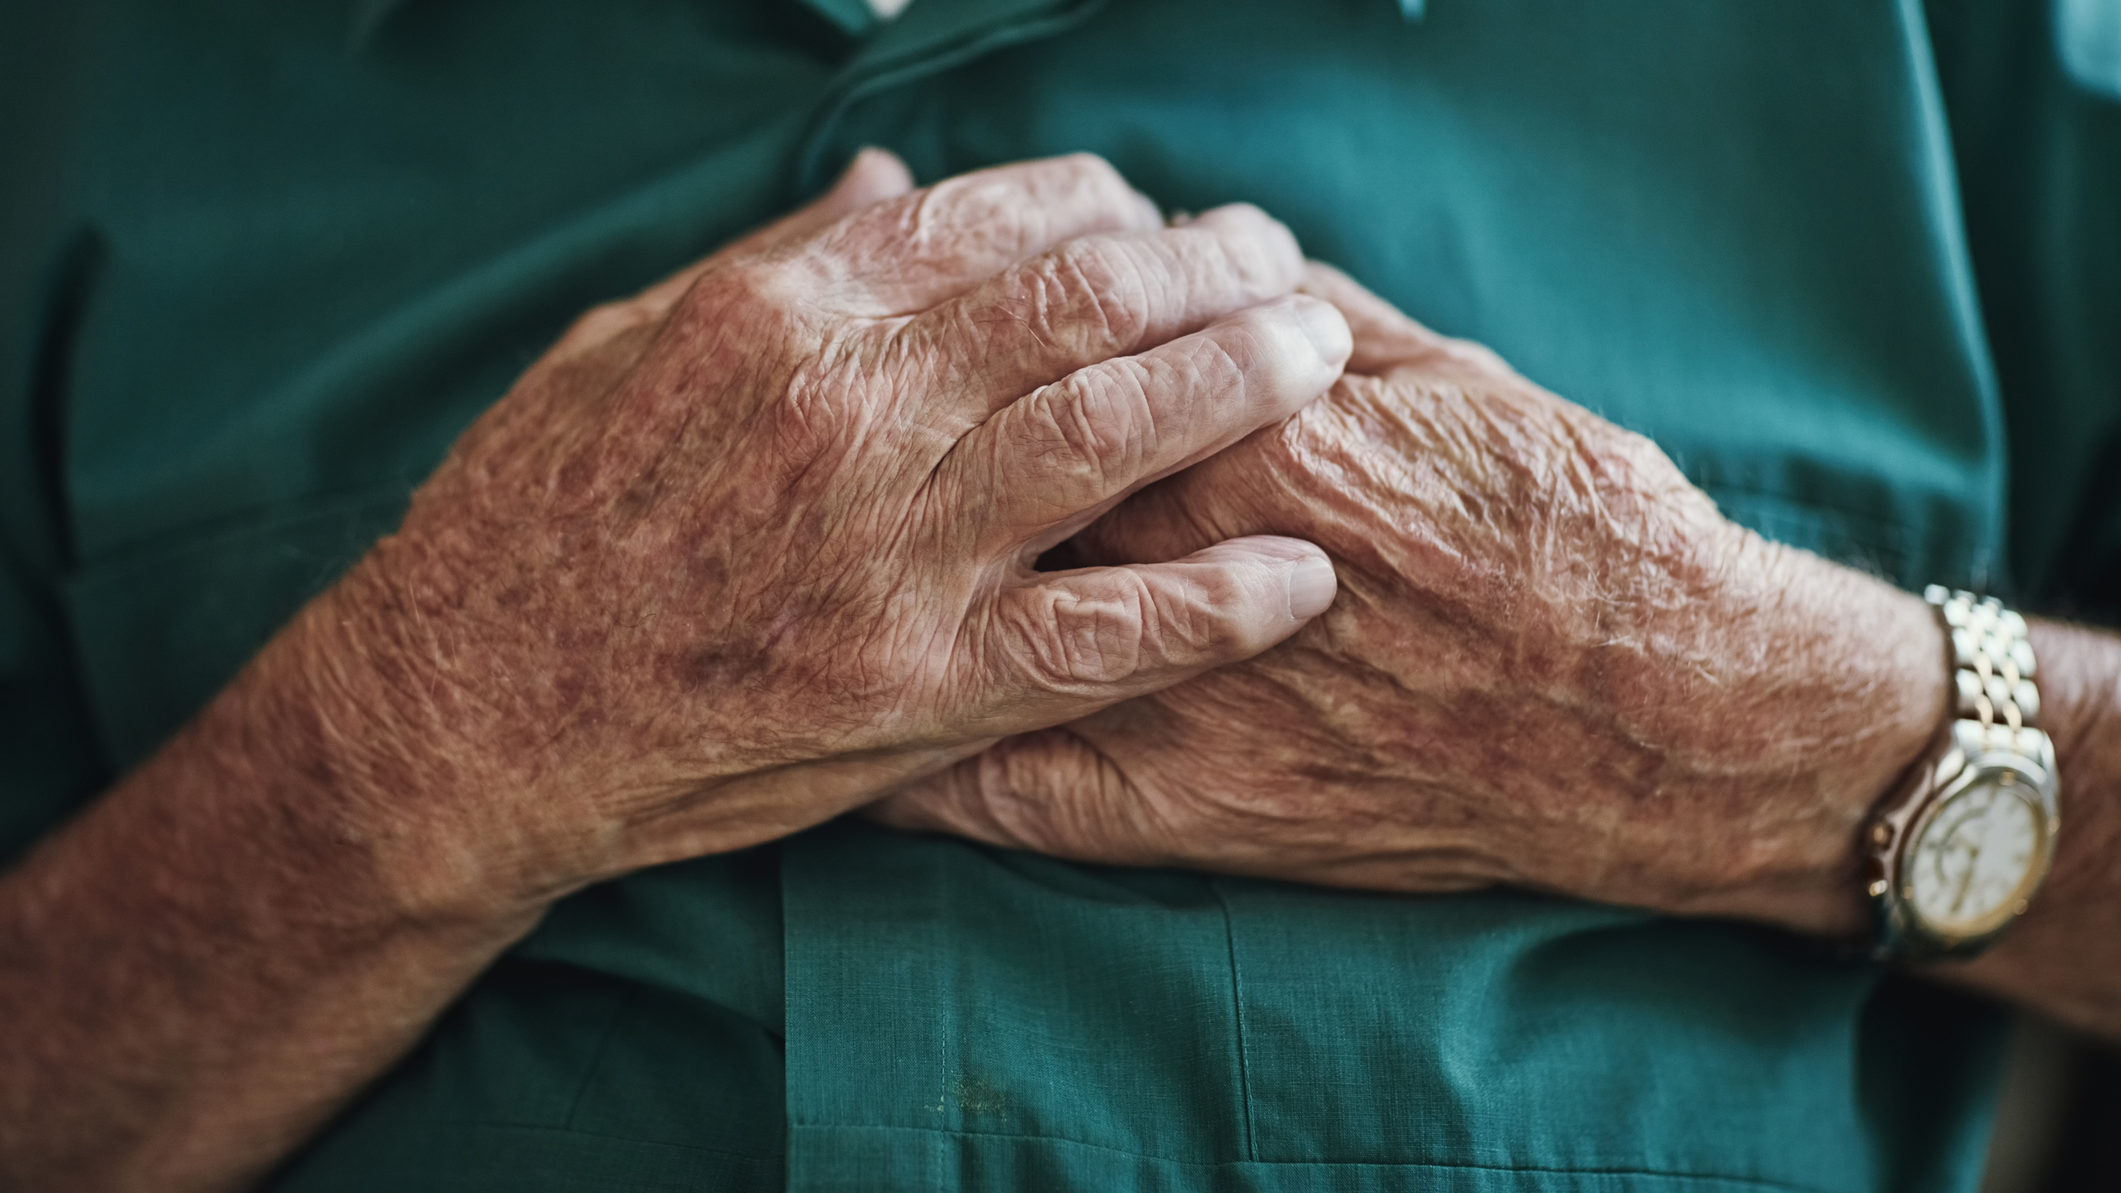 Lehet-e magán egészségbiztosítást kötni nyugdíjasként?